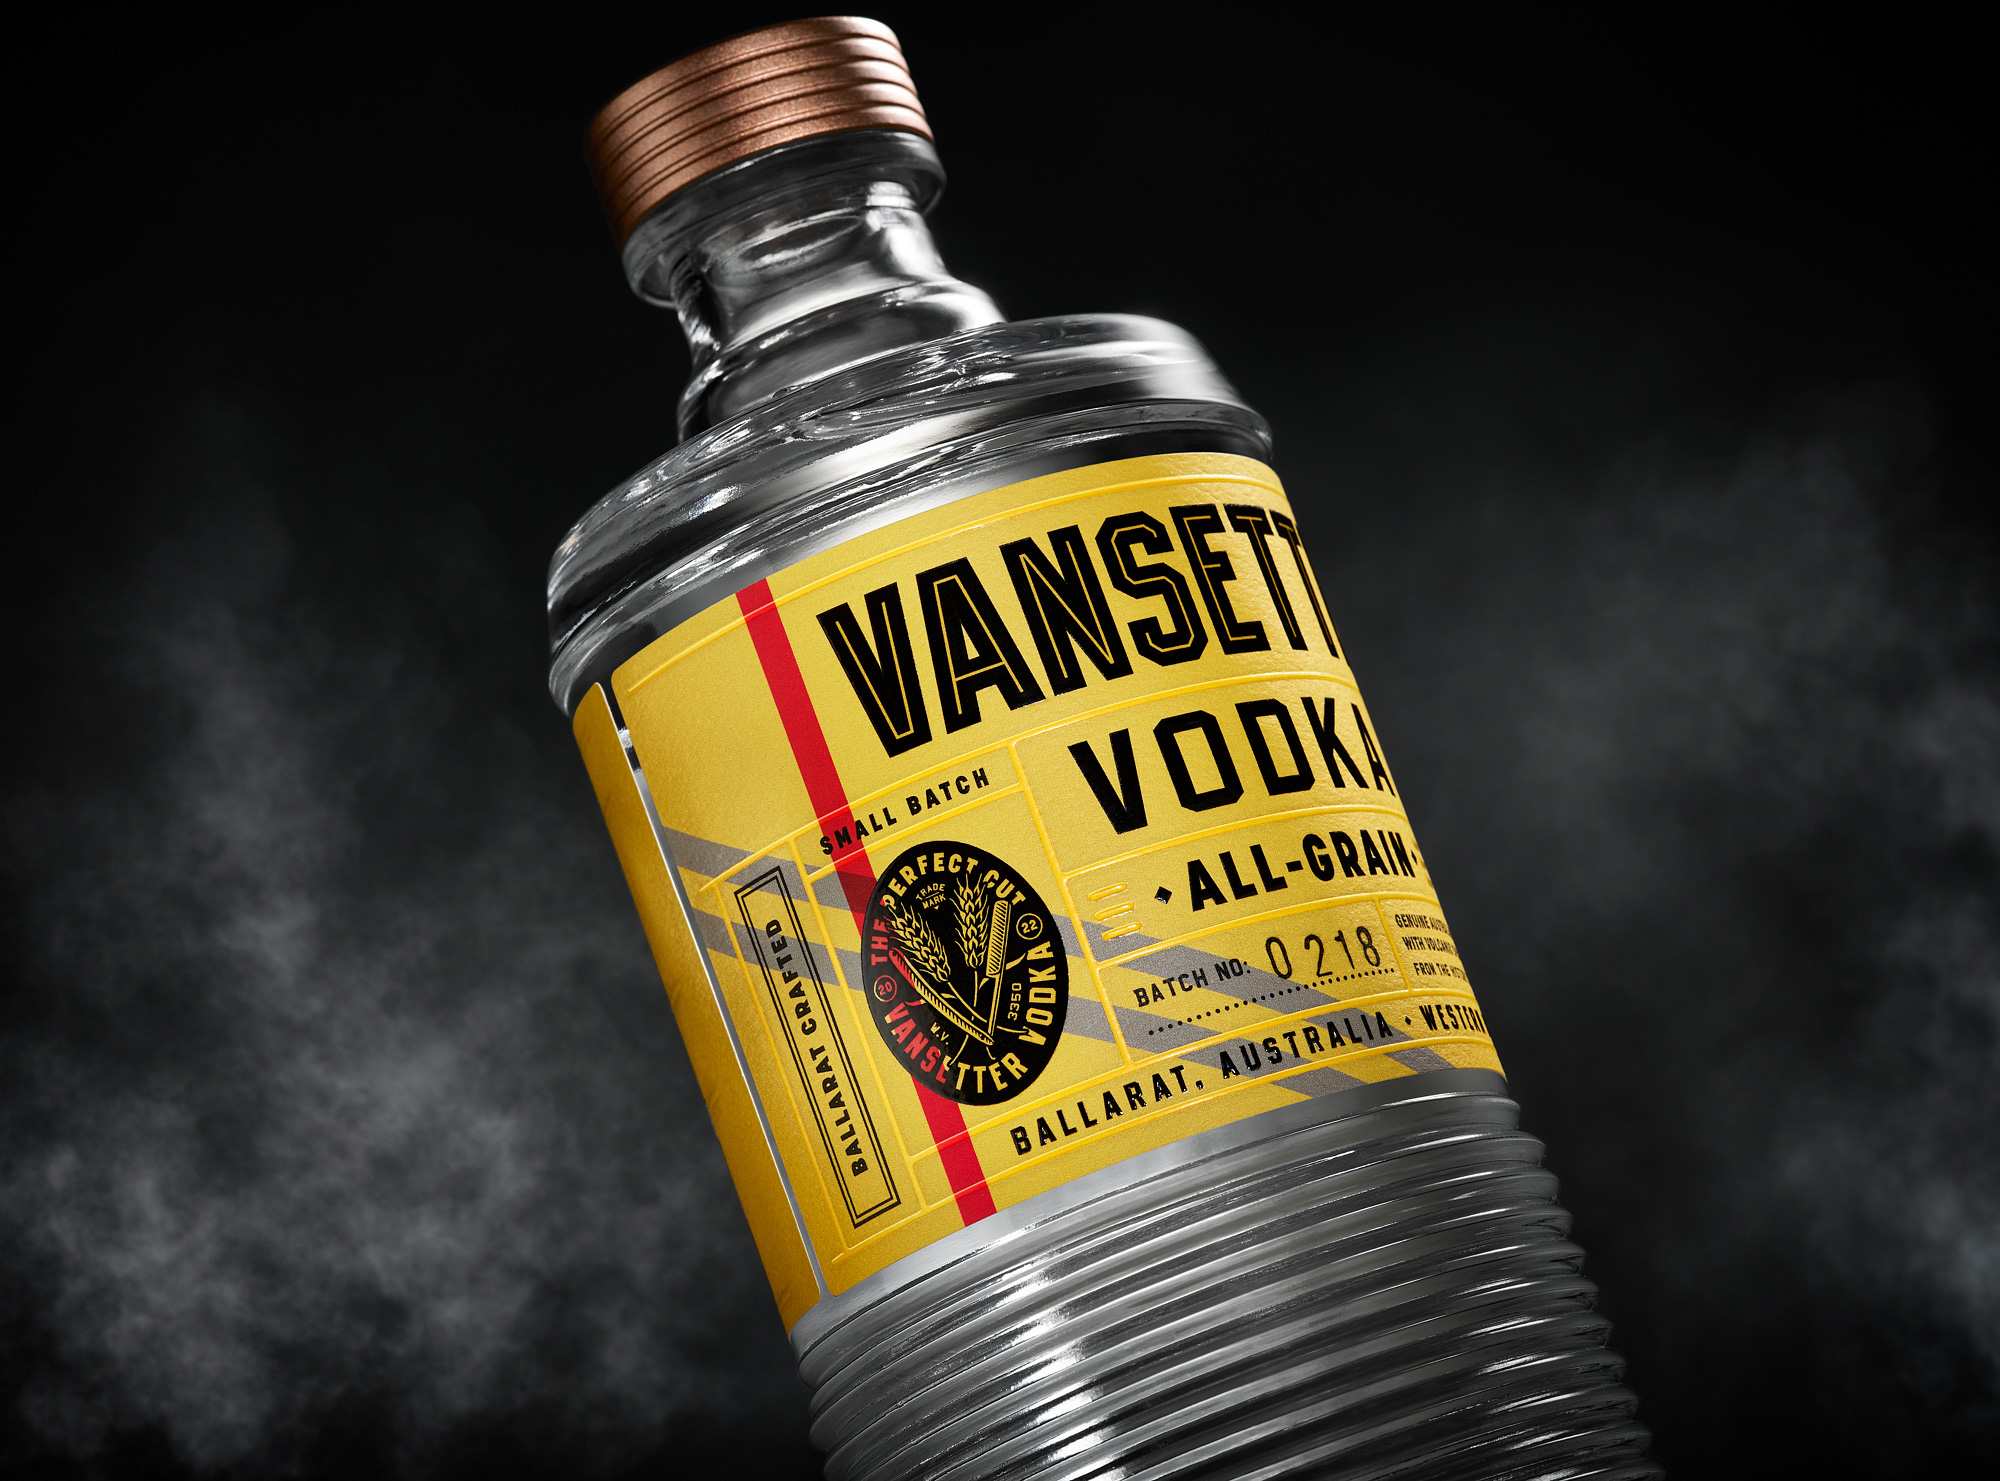 Branding and package design for Australian Vodka